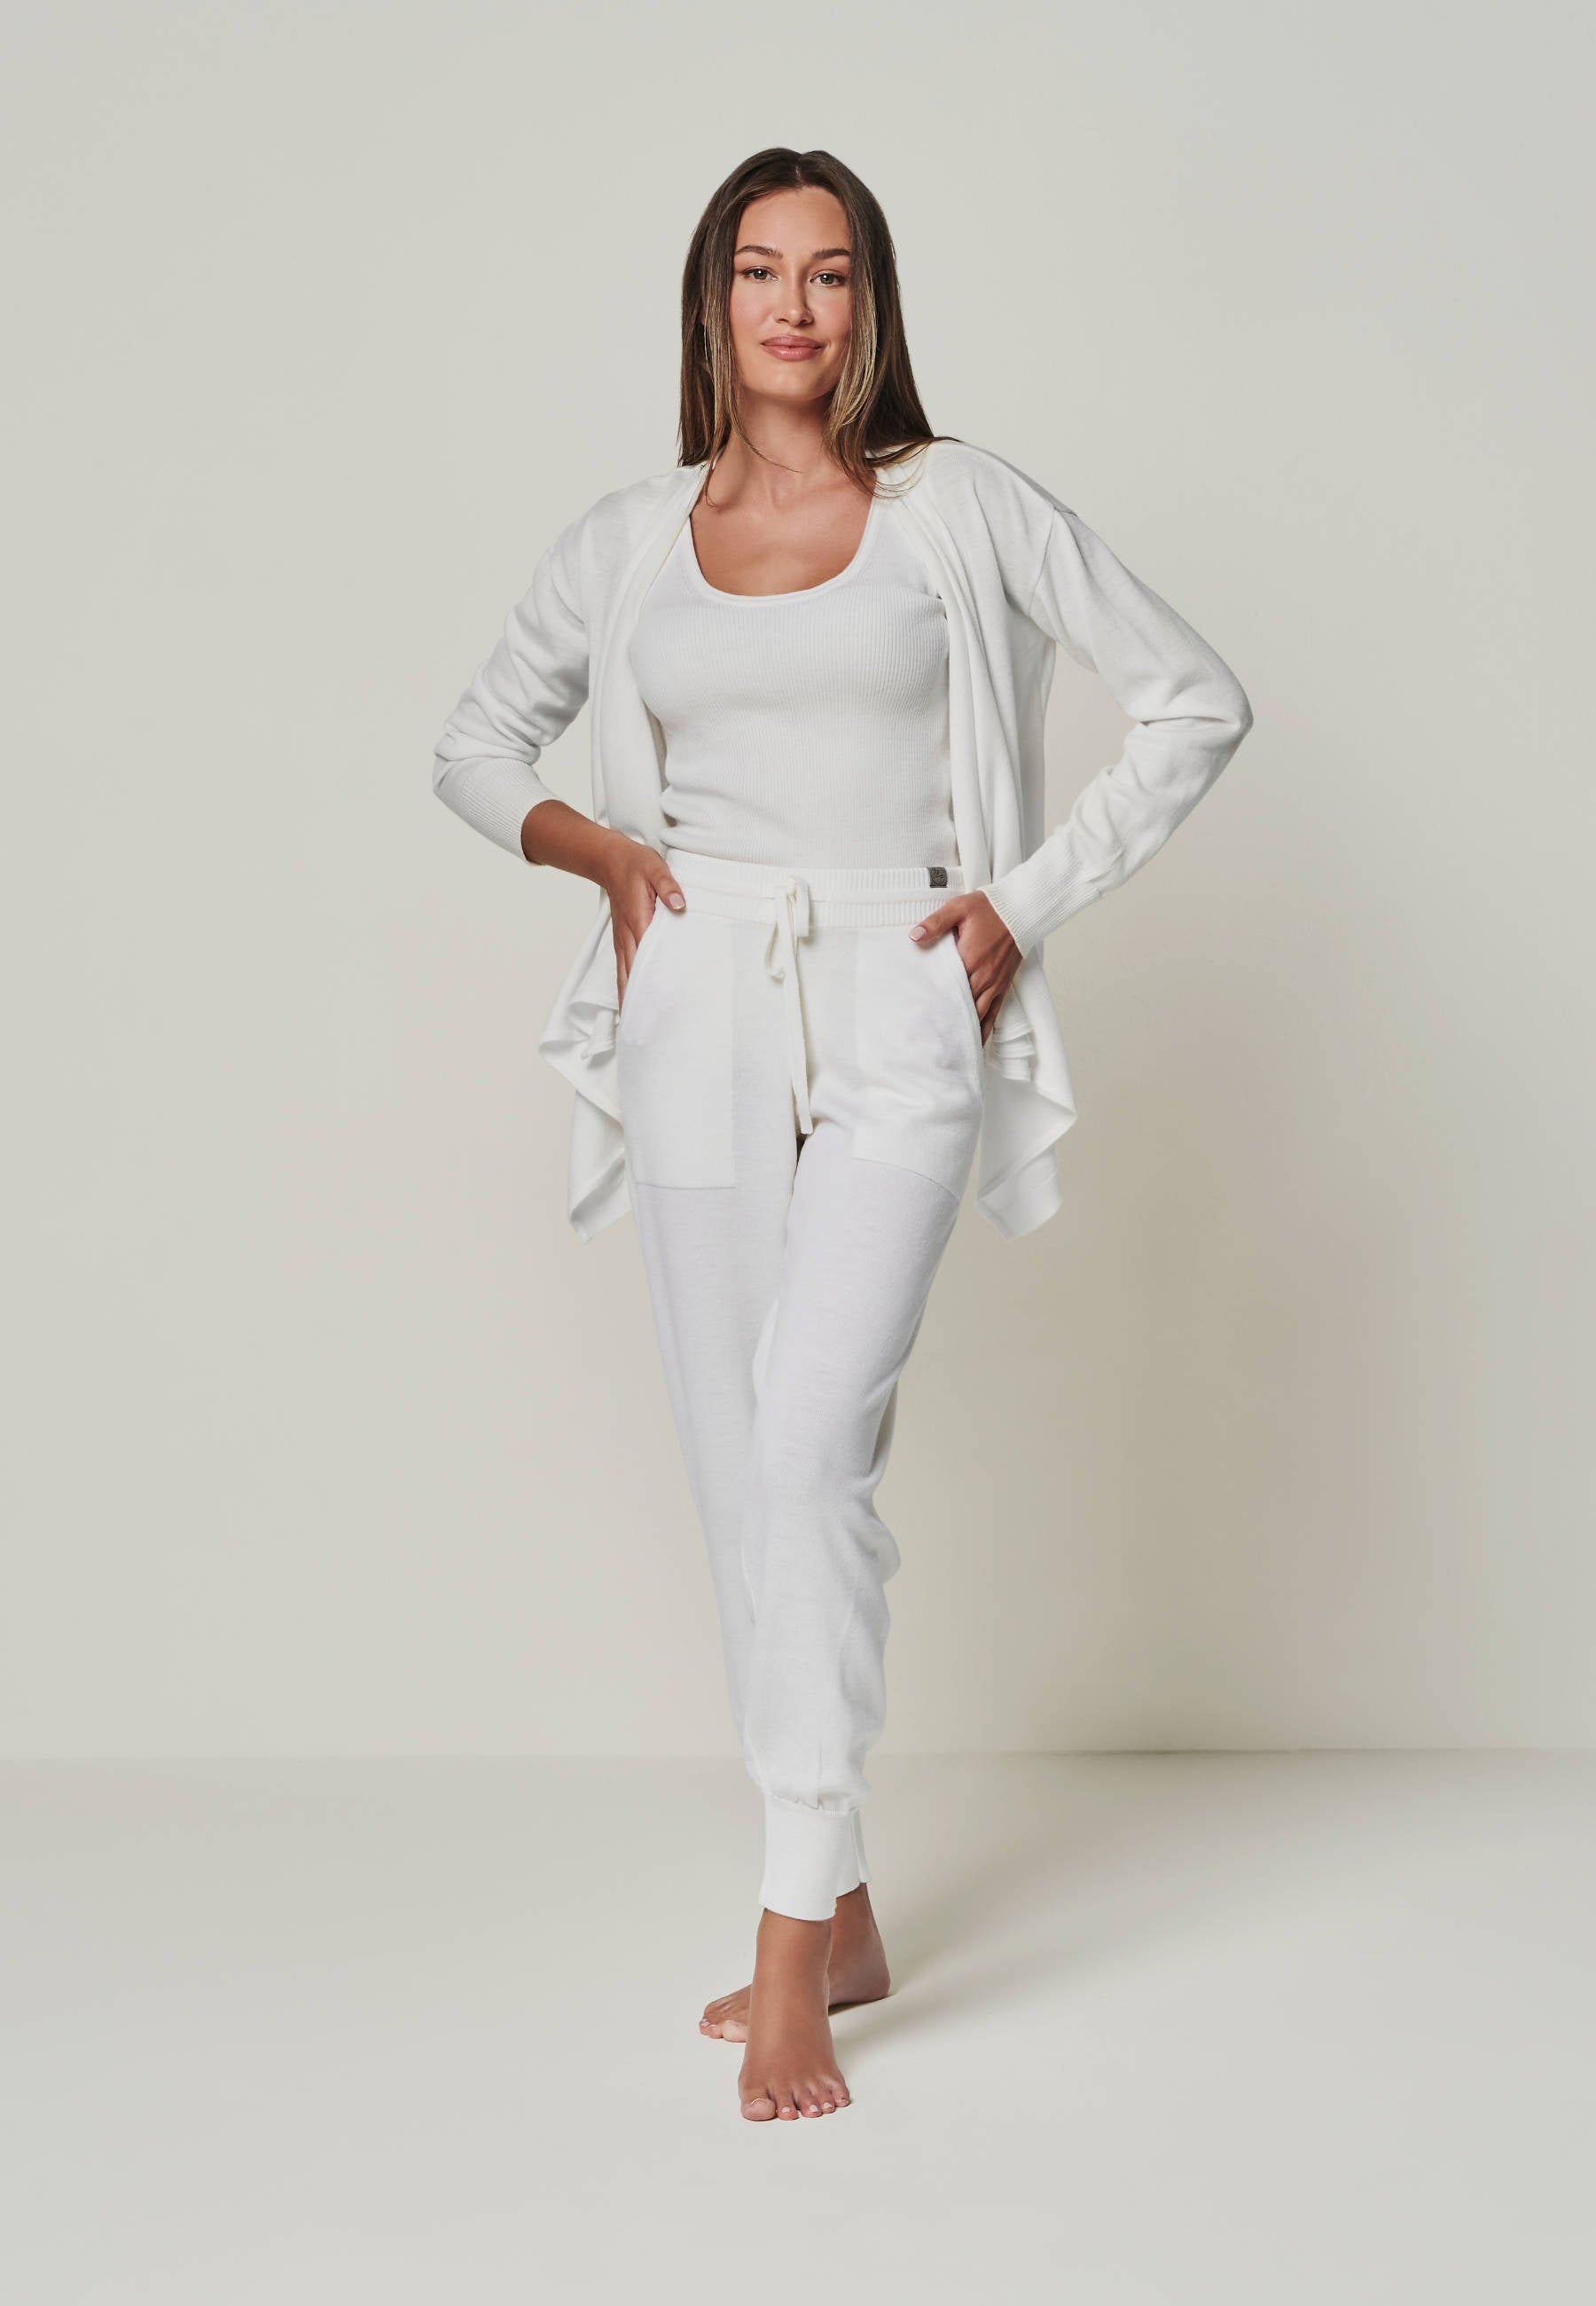 Women's Merino Loungewear Set available in White & Beige